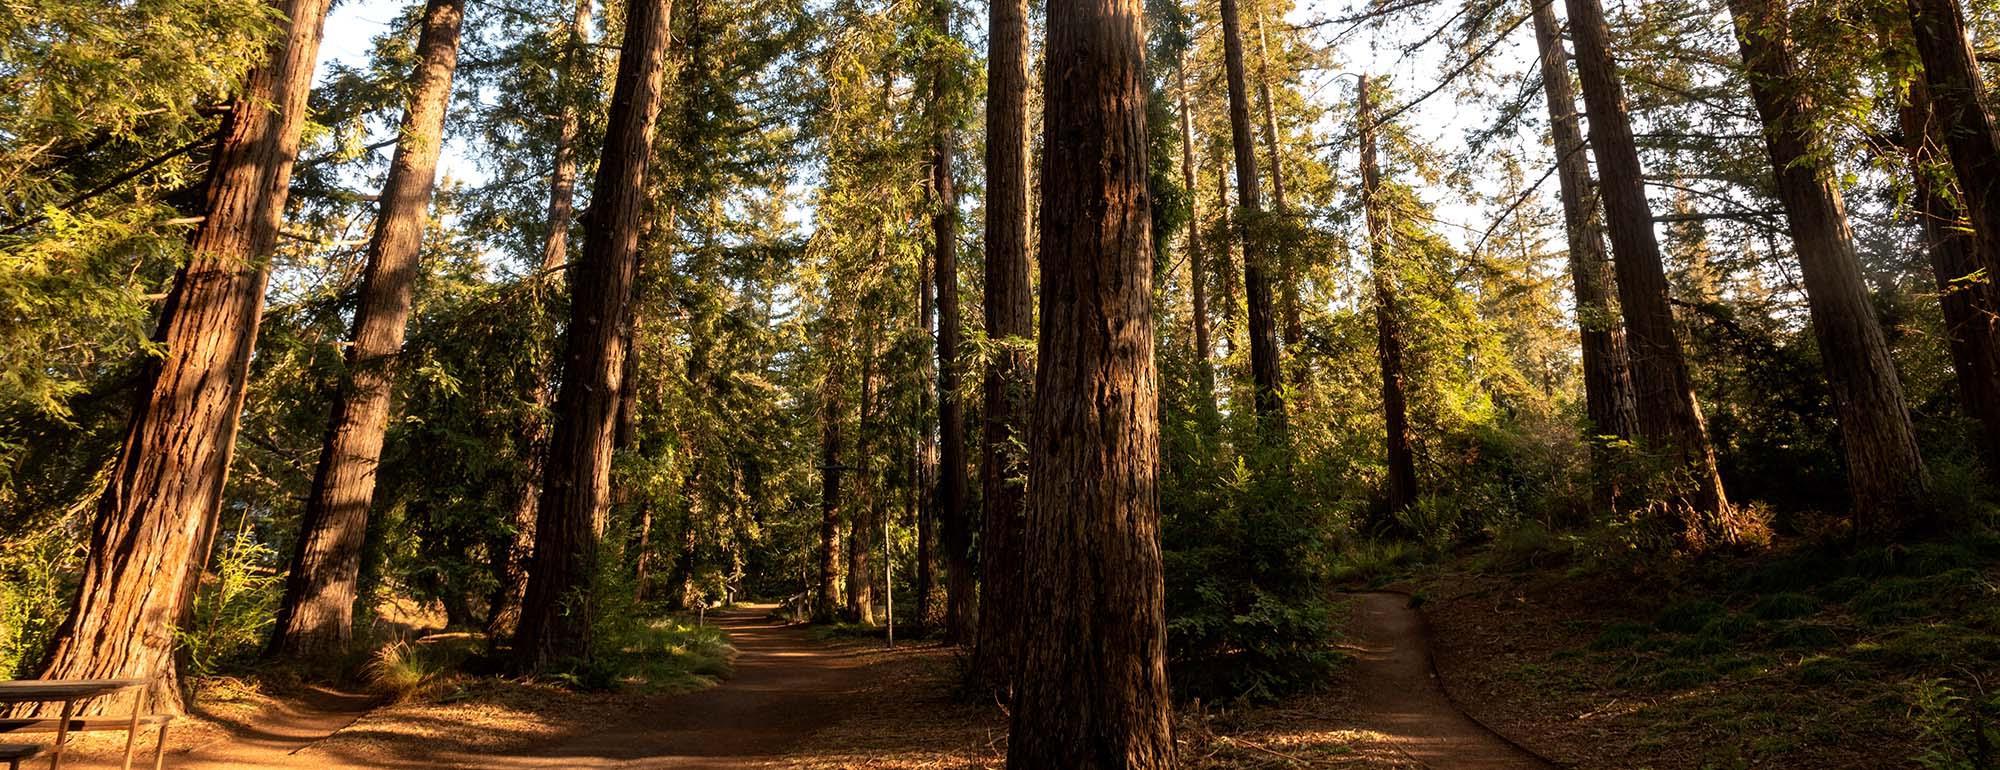 加州大学戴维斯植物园的红杉